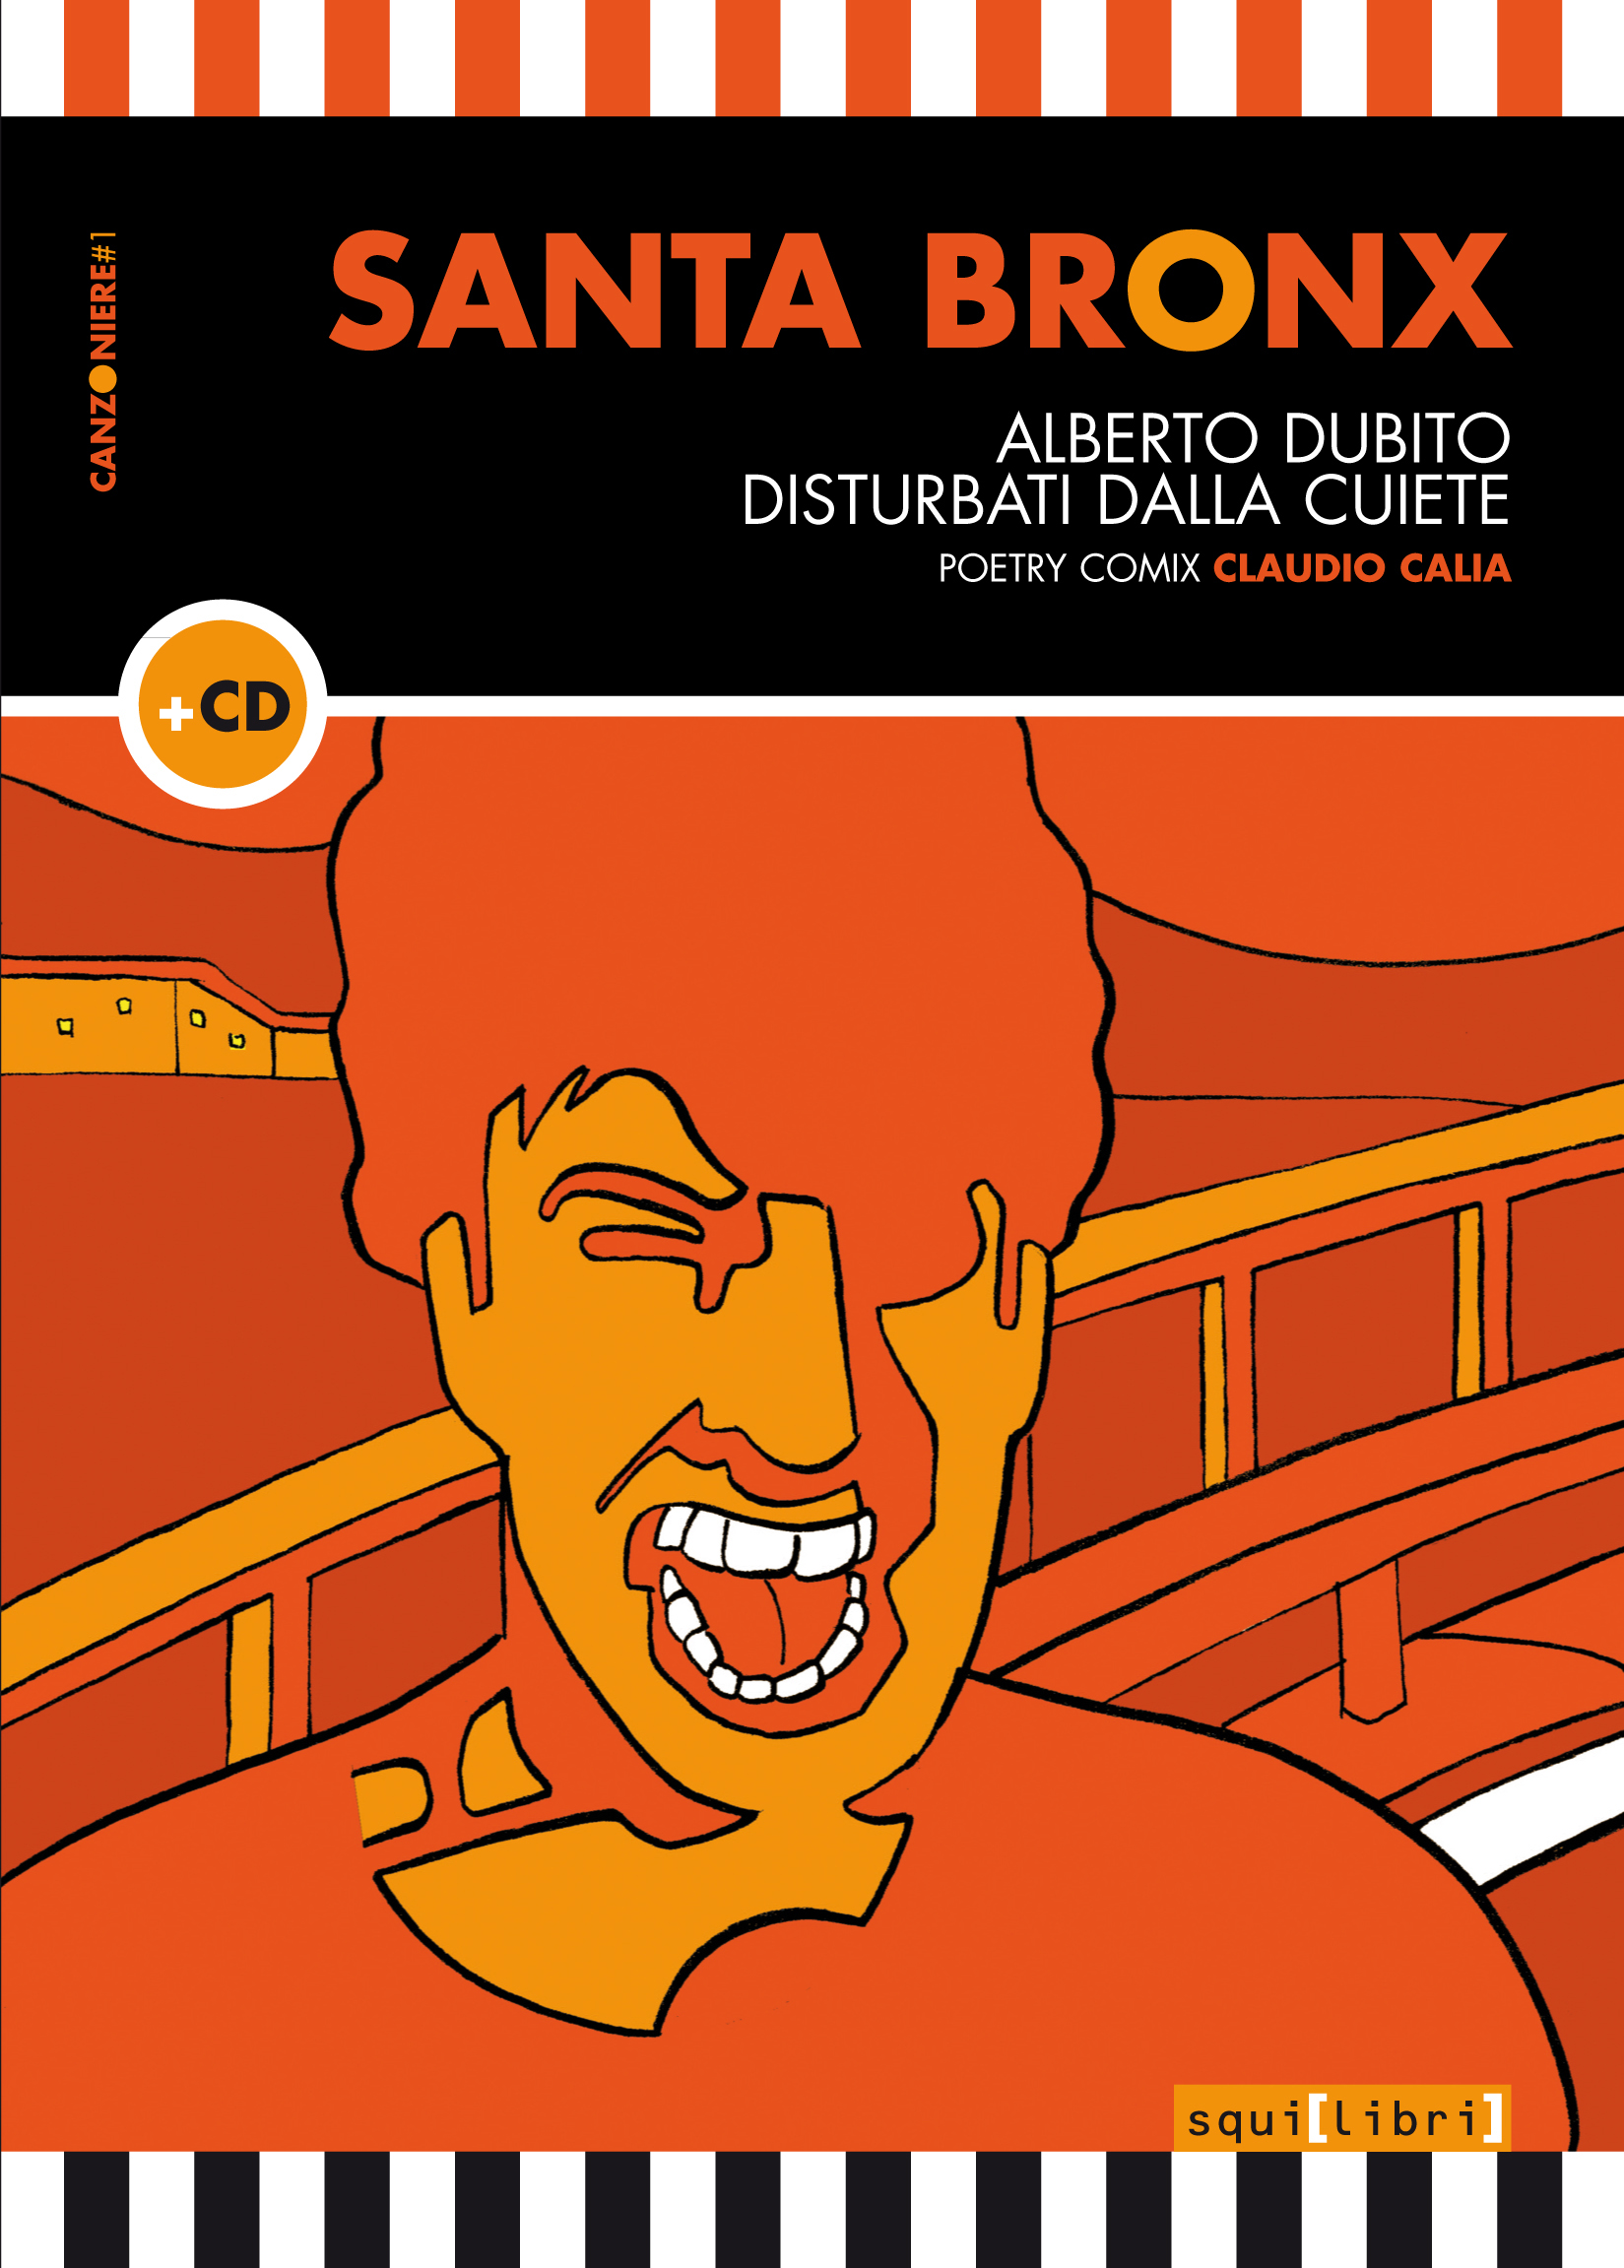 SANTA BRONX - Alberto Dubito || Disturbati dalla CUiete<br> Poetry Comics - Claudio Calia